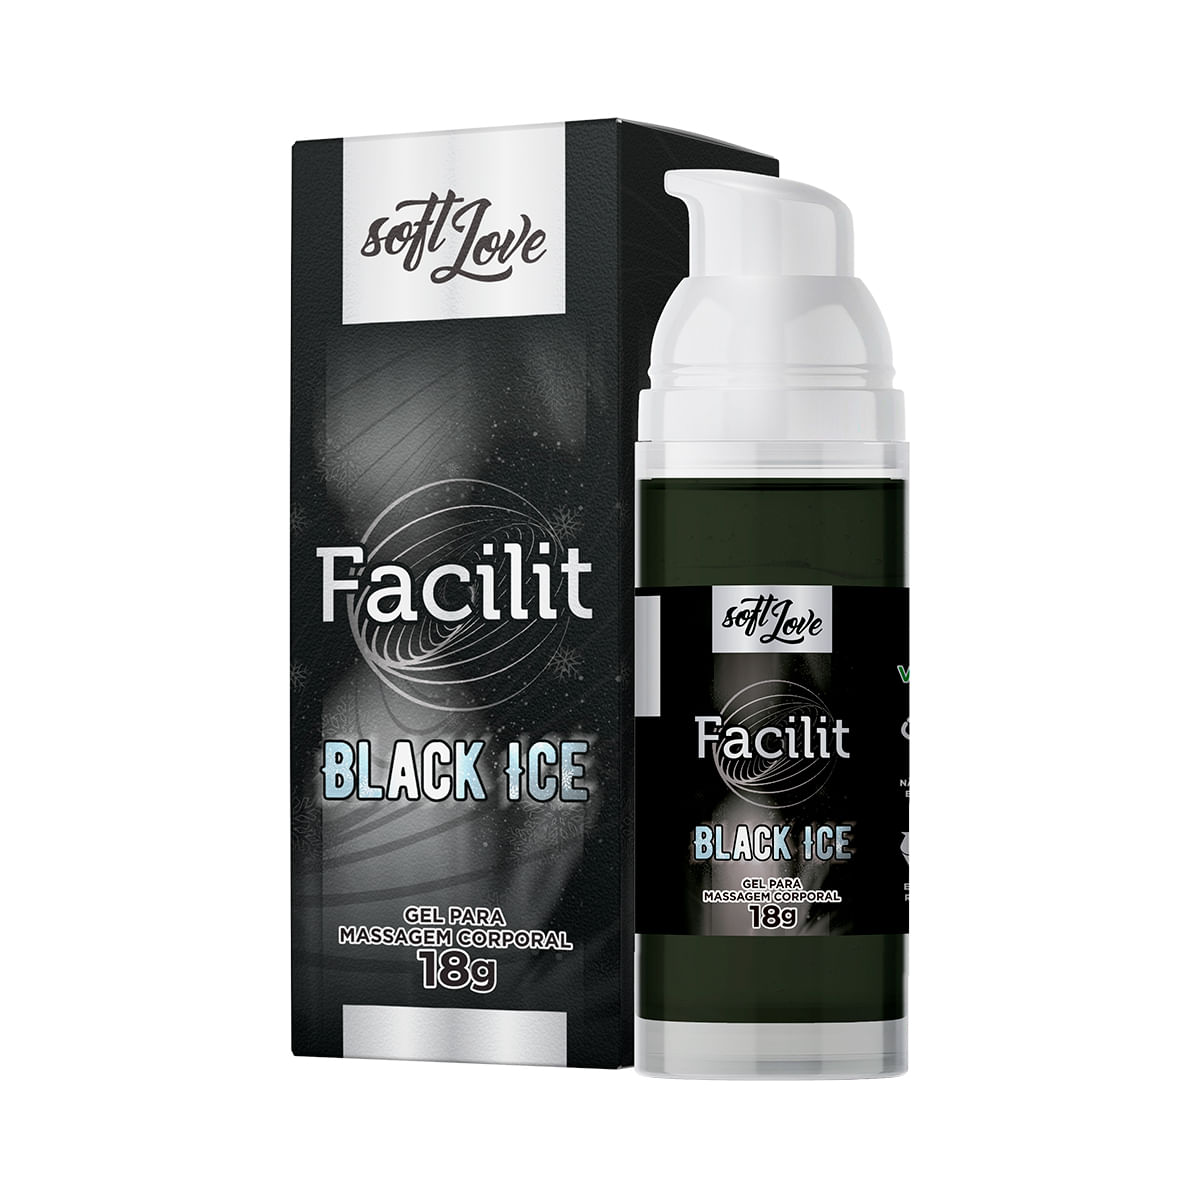 Facilit Black Ice Lubrificante Dessensibilizante 18g Soft Love